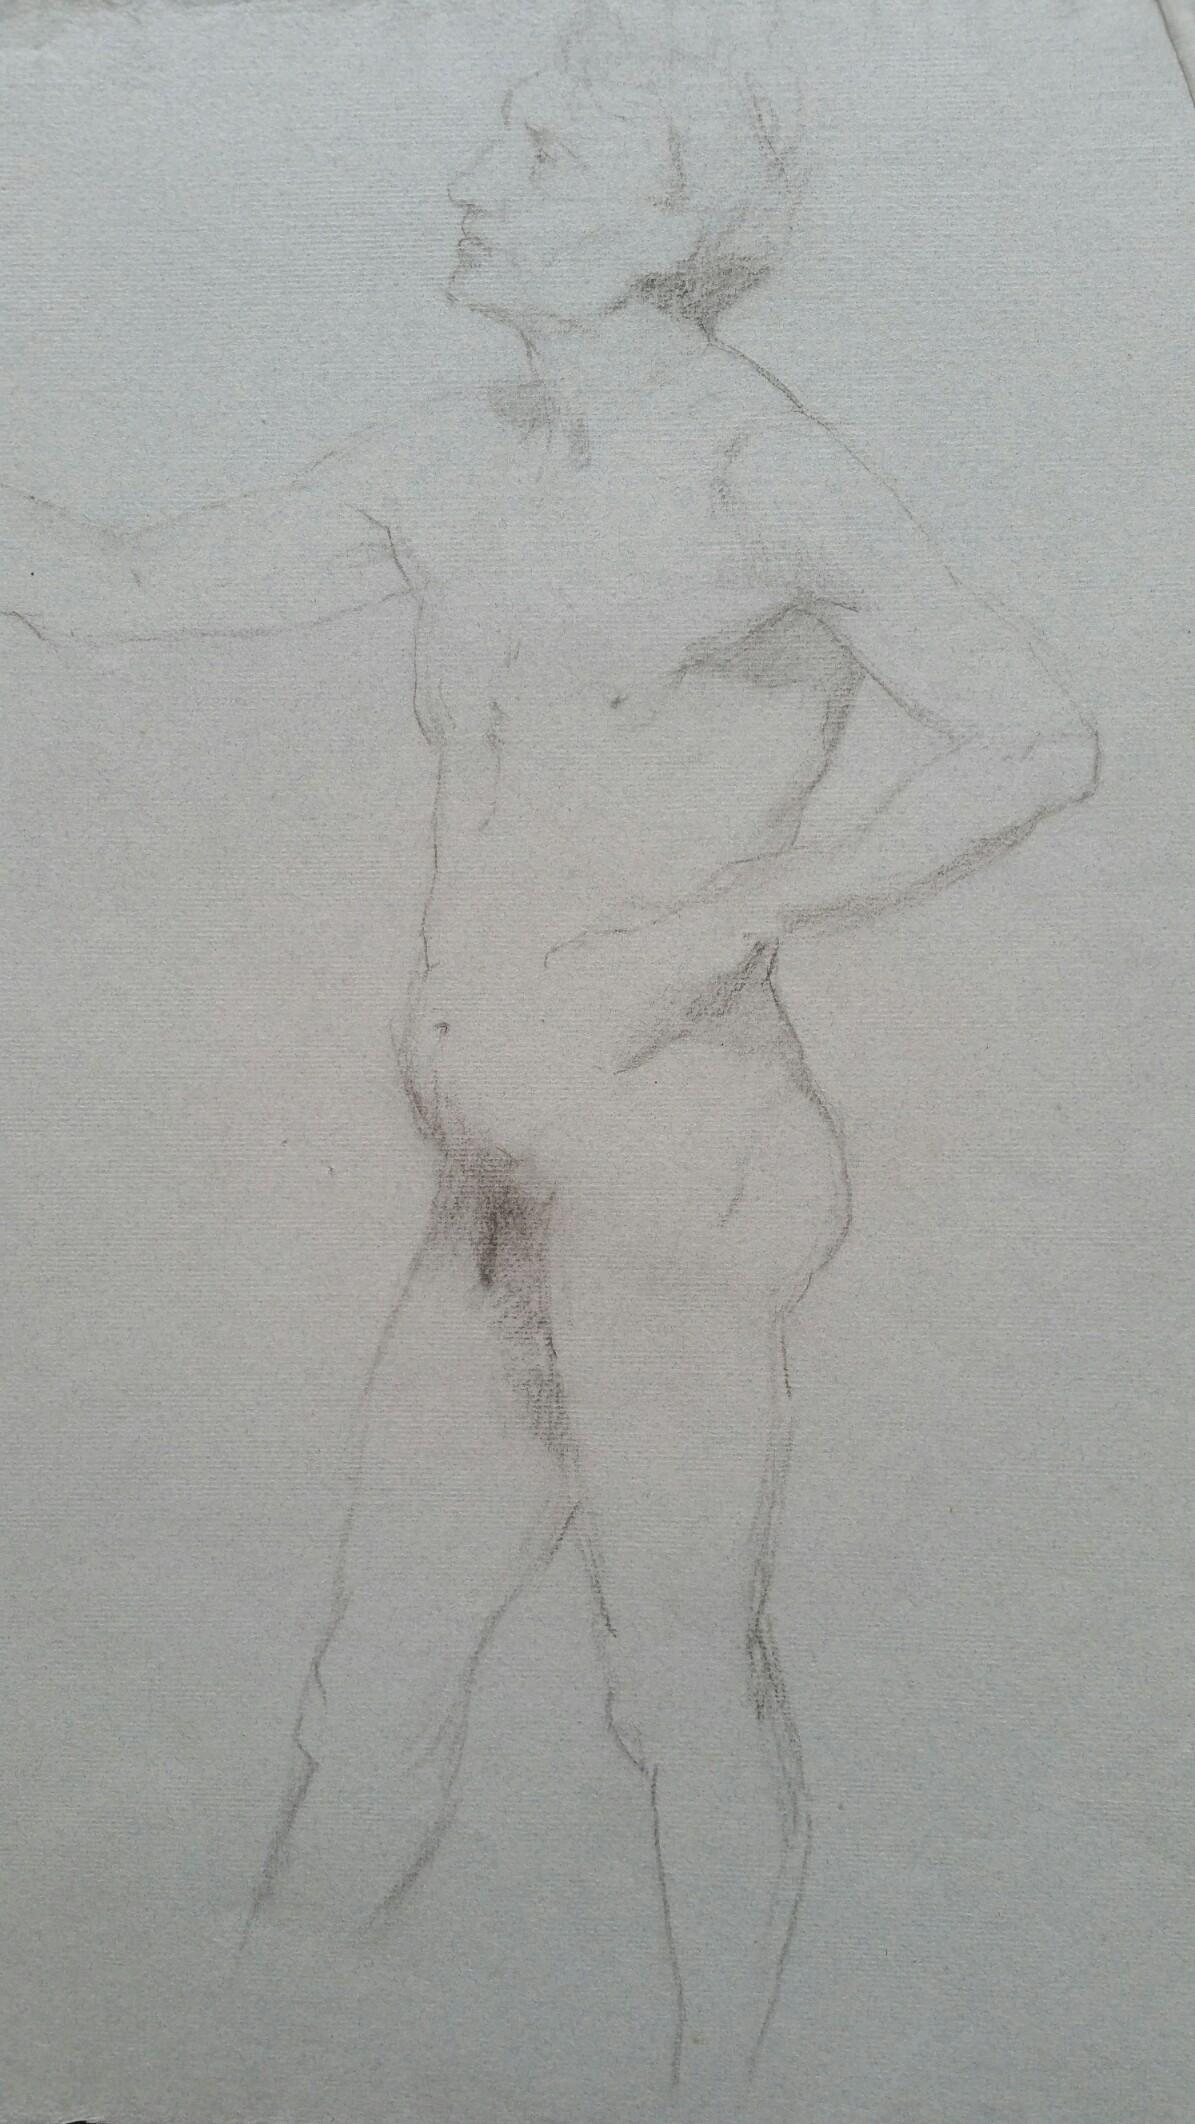 Portrait en graphite anglais d'un nu masculin, de profil